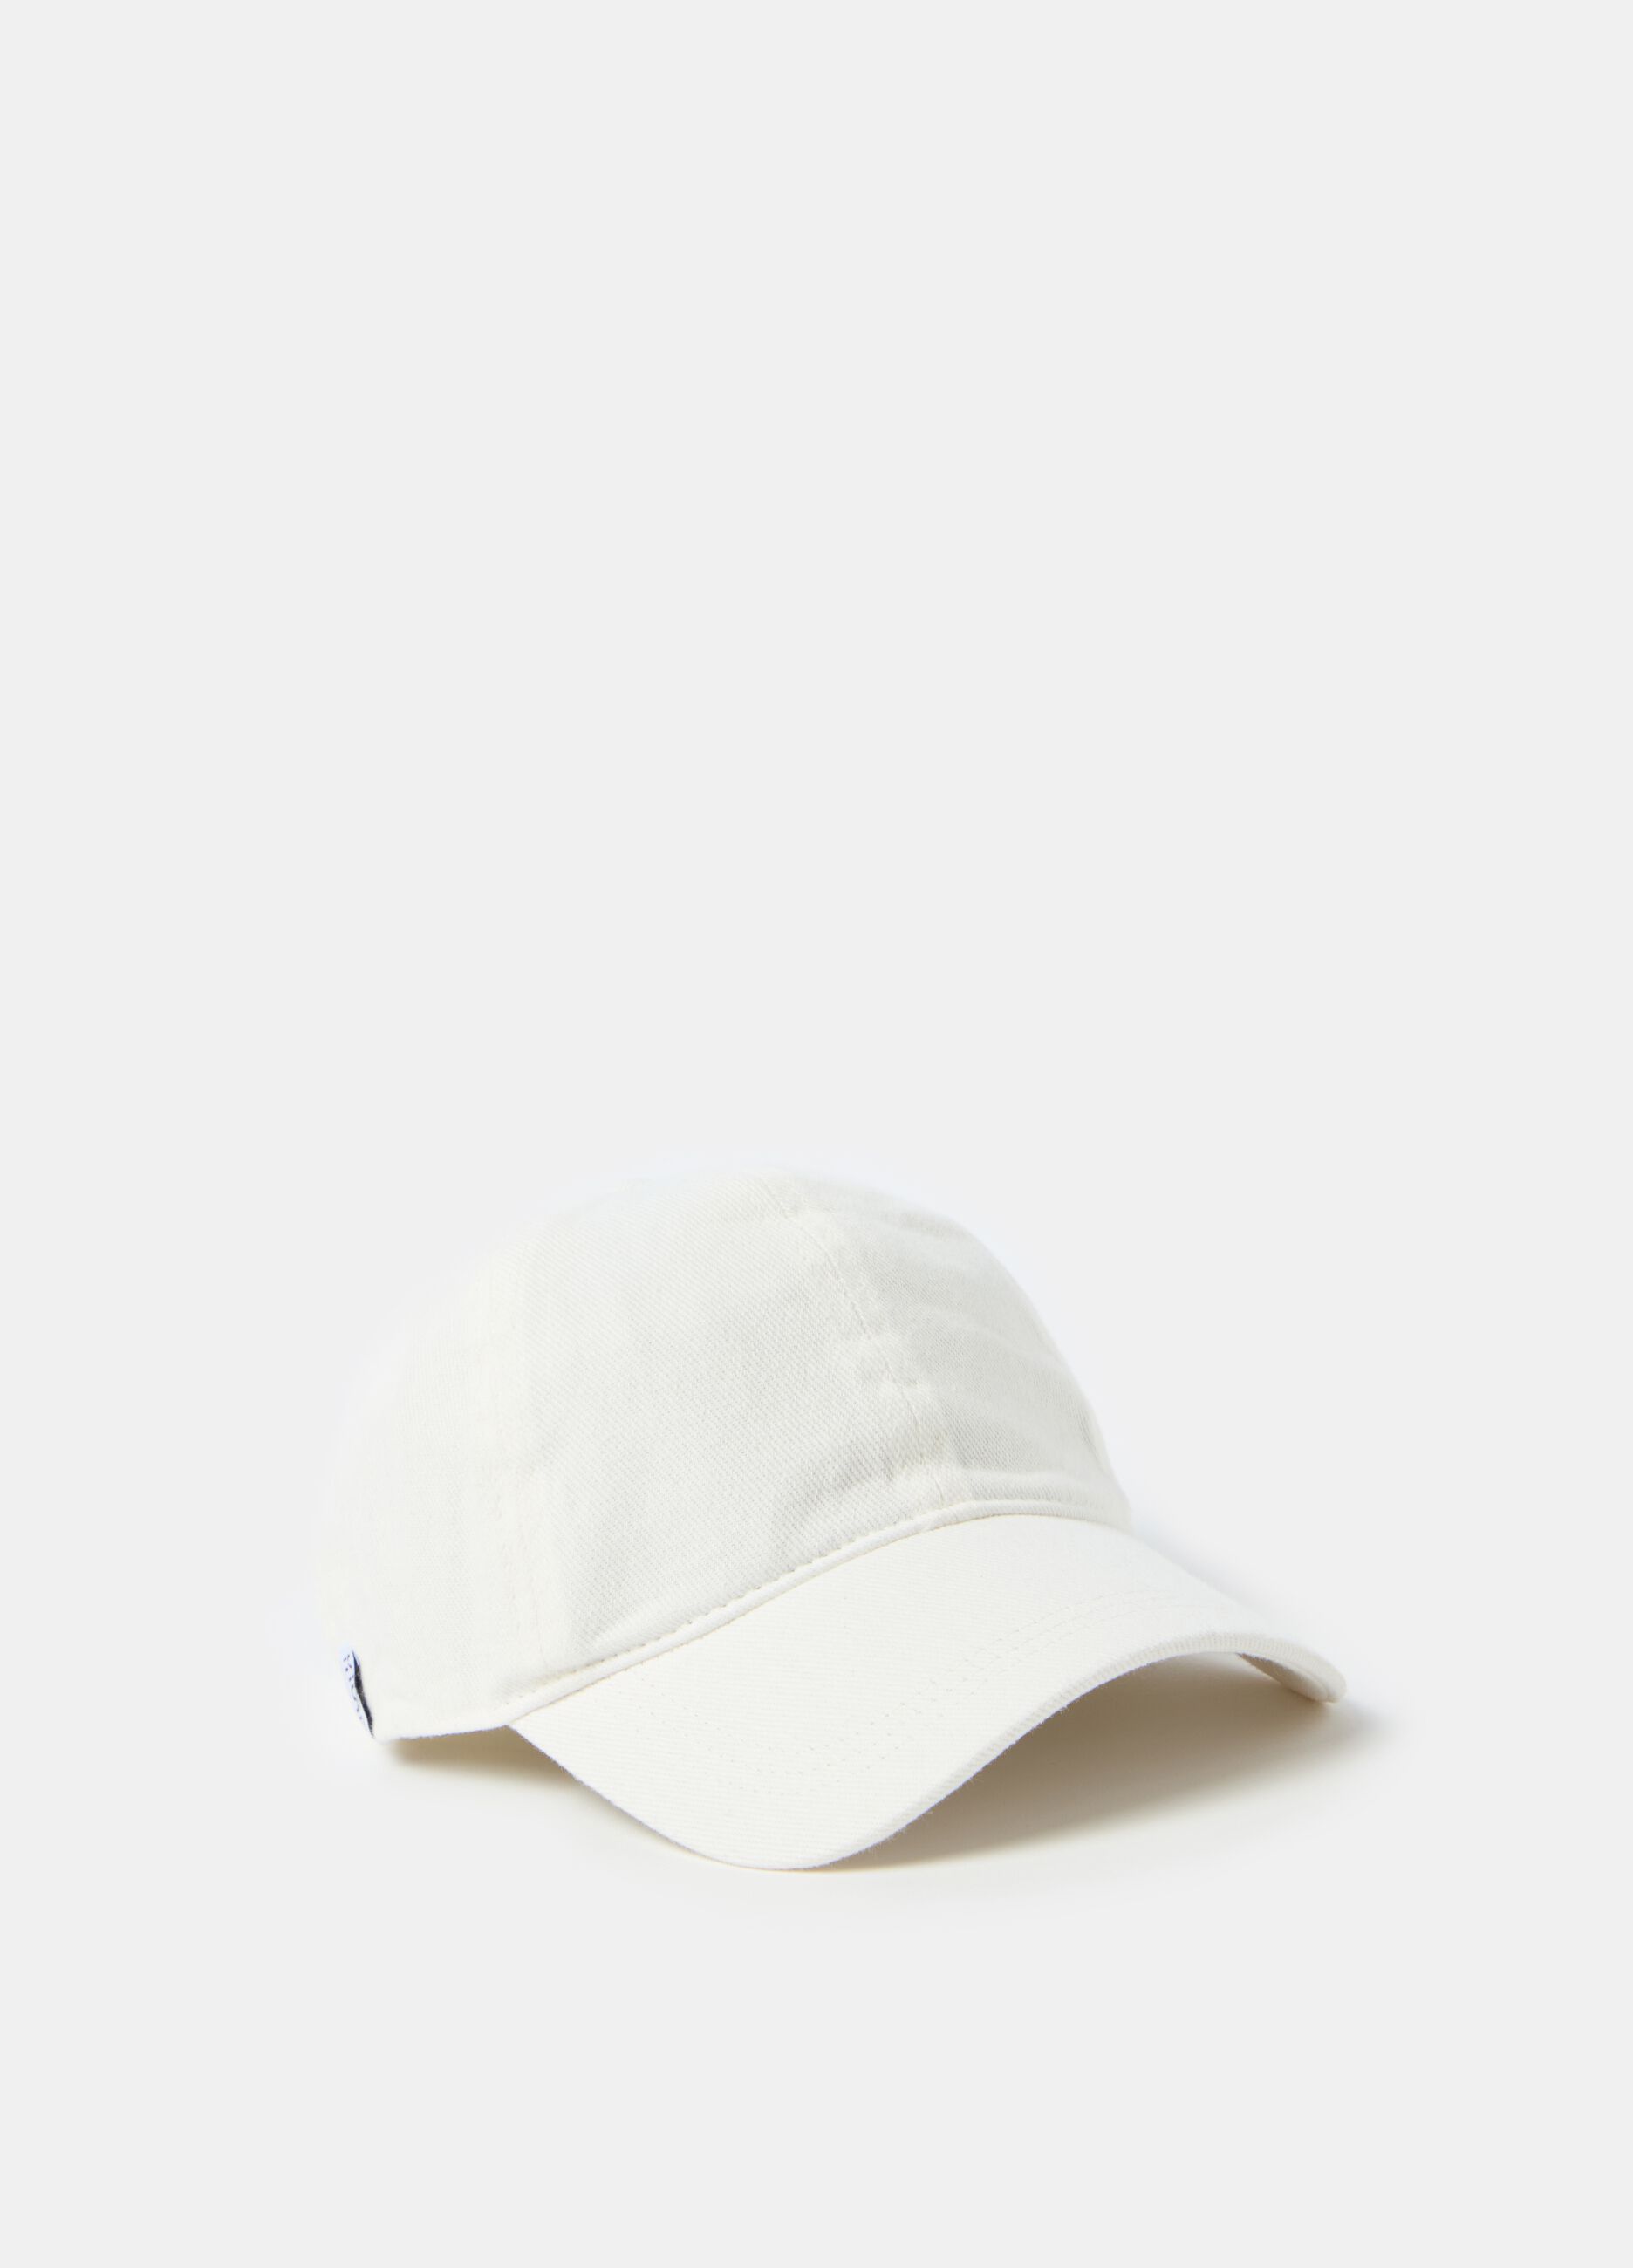 Essential baseball cap in cotton